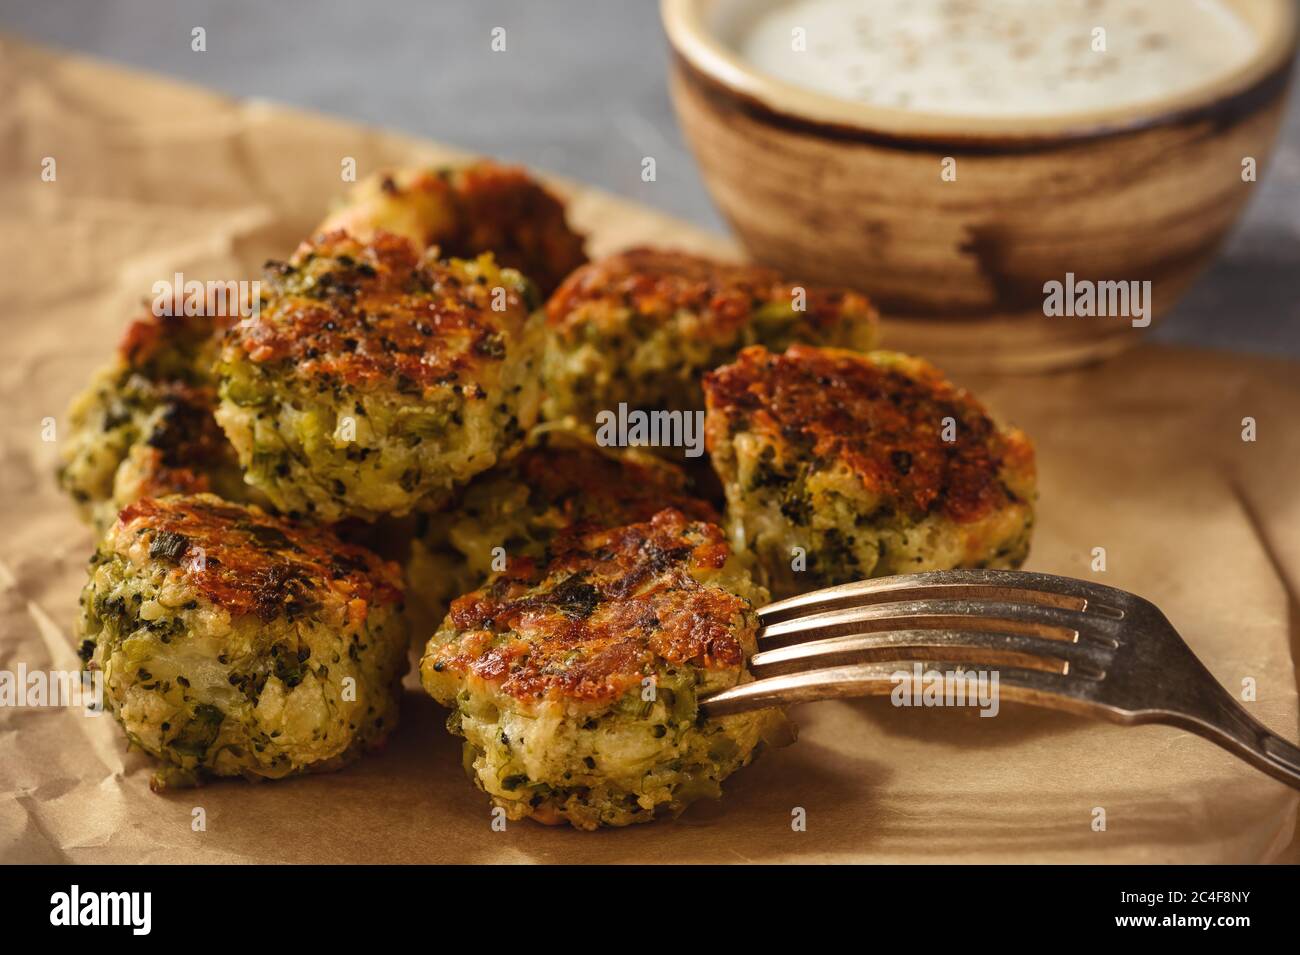 Palline di broccoli al forno con salsa all'aglio, cibo vegetariano. Foto Stock